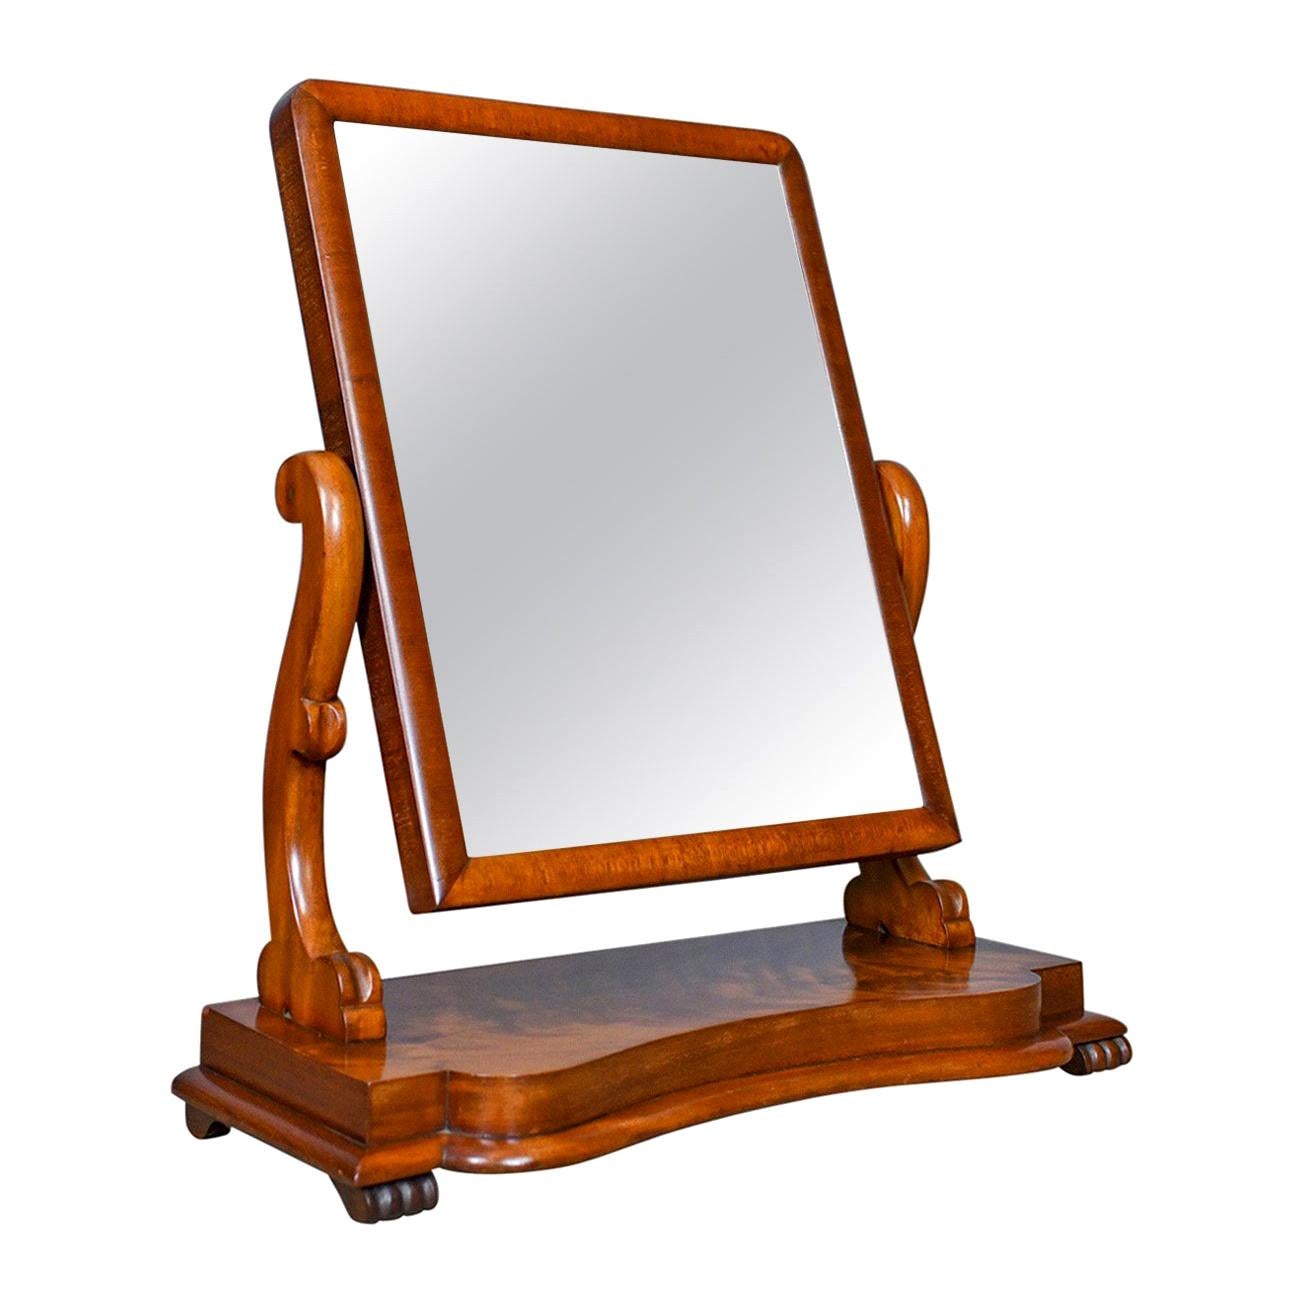 Vanity Wooden Tabletop Ornate Swing Mirror